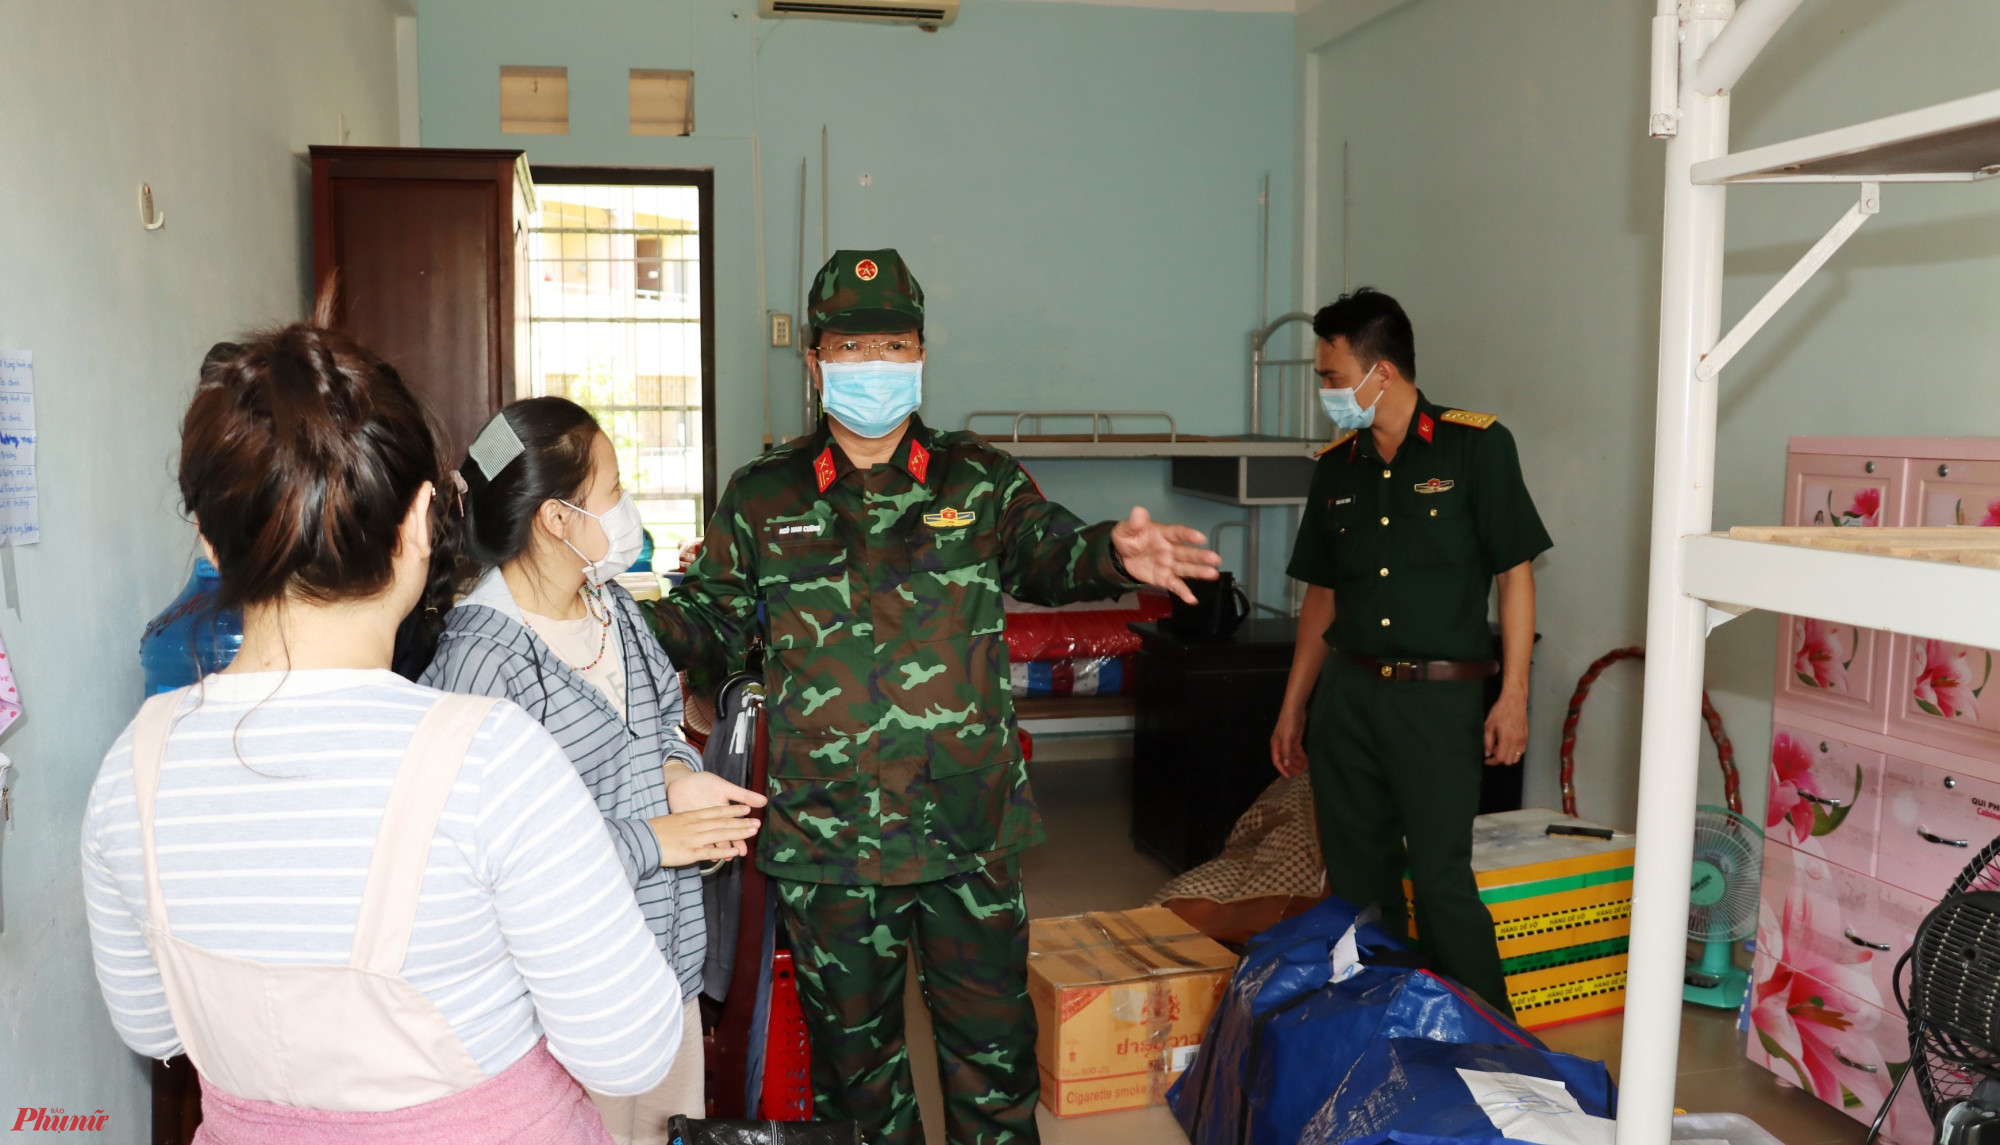 Thượng tá Ngô Nam Cường - Chỉ huy trưởng Bộ chỉ huy Quân sự tỉnh Thừa Thiên - Kiểm kiểm tra Khu cách ly Ký túc xá Đai học Huế